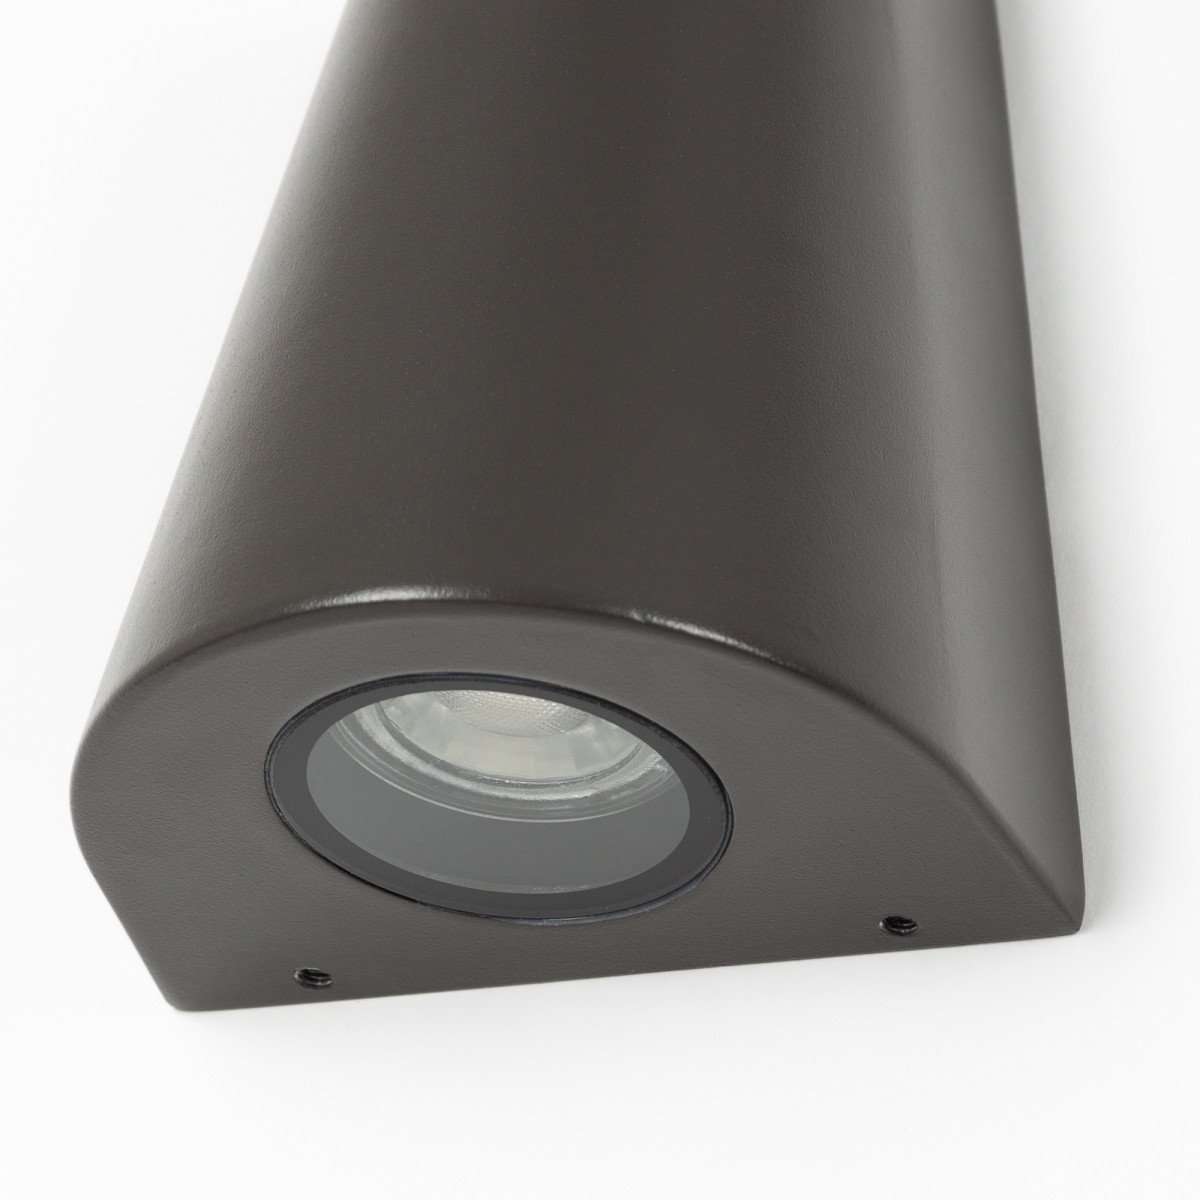 Buitenlamp Cone Downlighter Antraciet, moderne wandverlichting voor buiten, sfeervol en functionele buitenverlichting van KS Verlichting